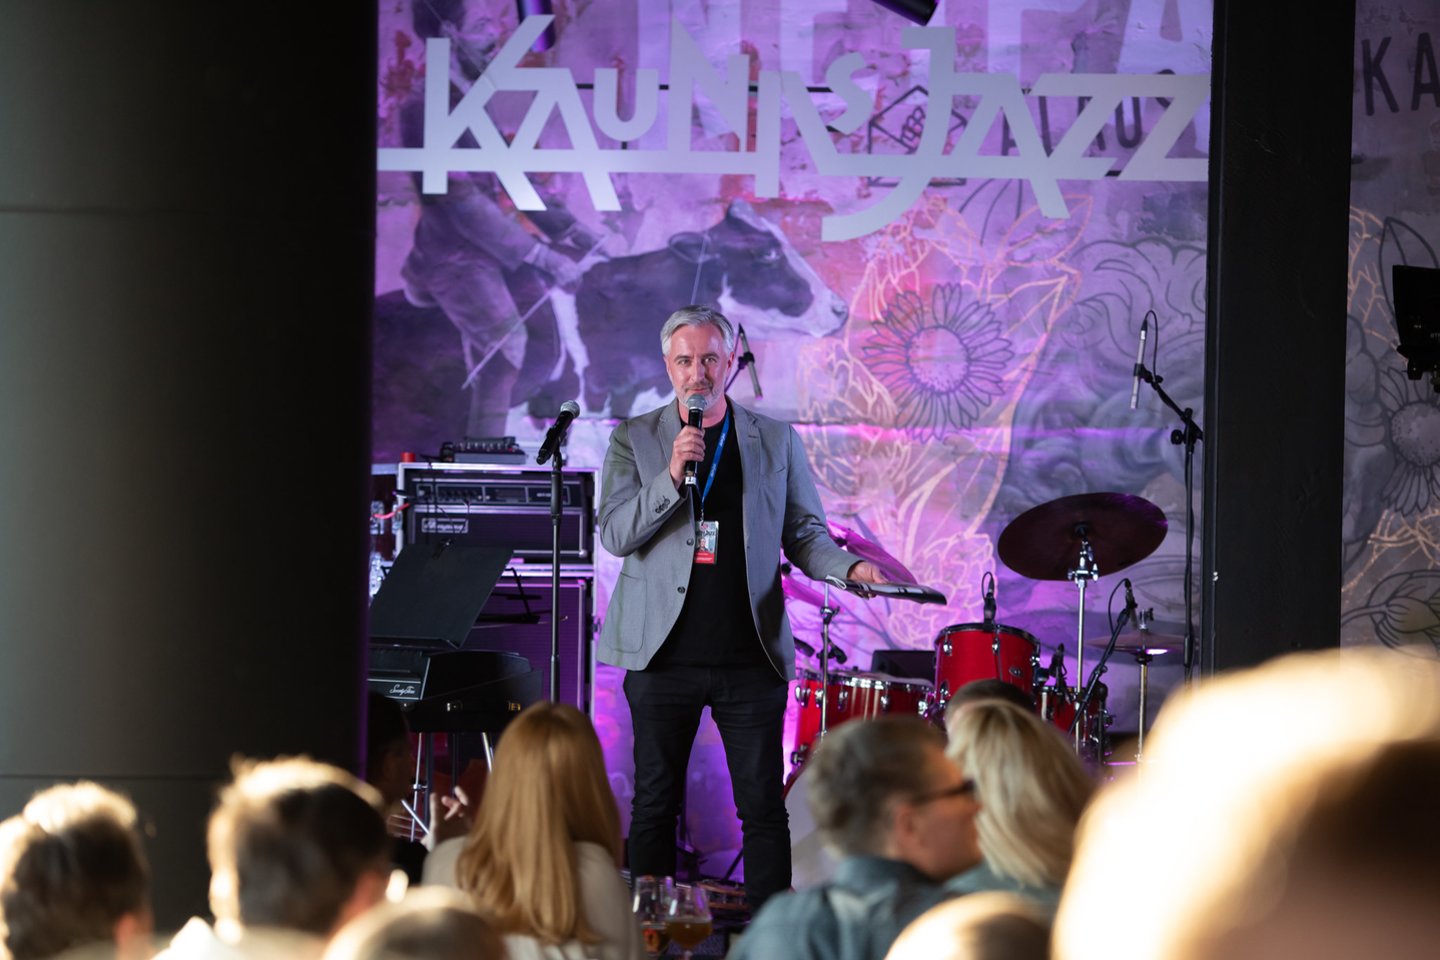 Pirmasis festivalio „Kaunas Jazz“ koncertas surengtas naujoje kultūrinėje erdvėje „Volfas Engelman galerija“. <br> R.Vilkelio nuotr.